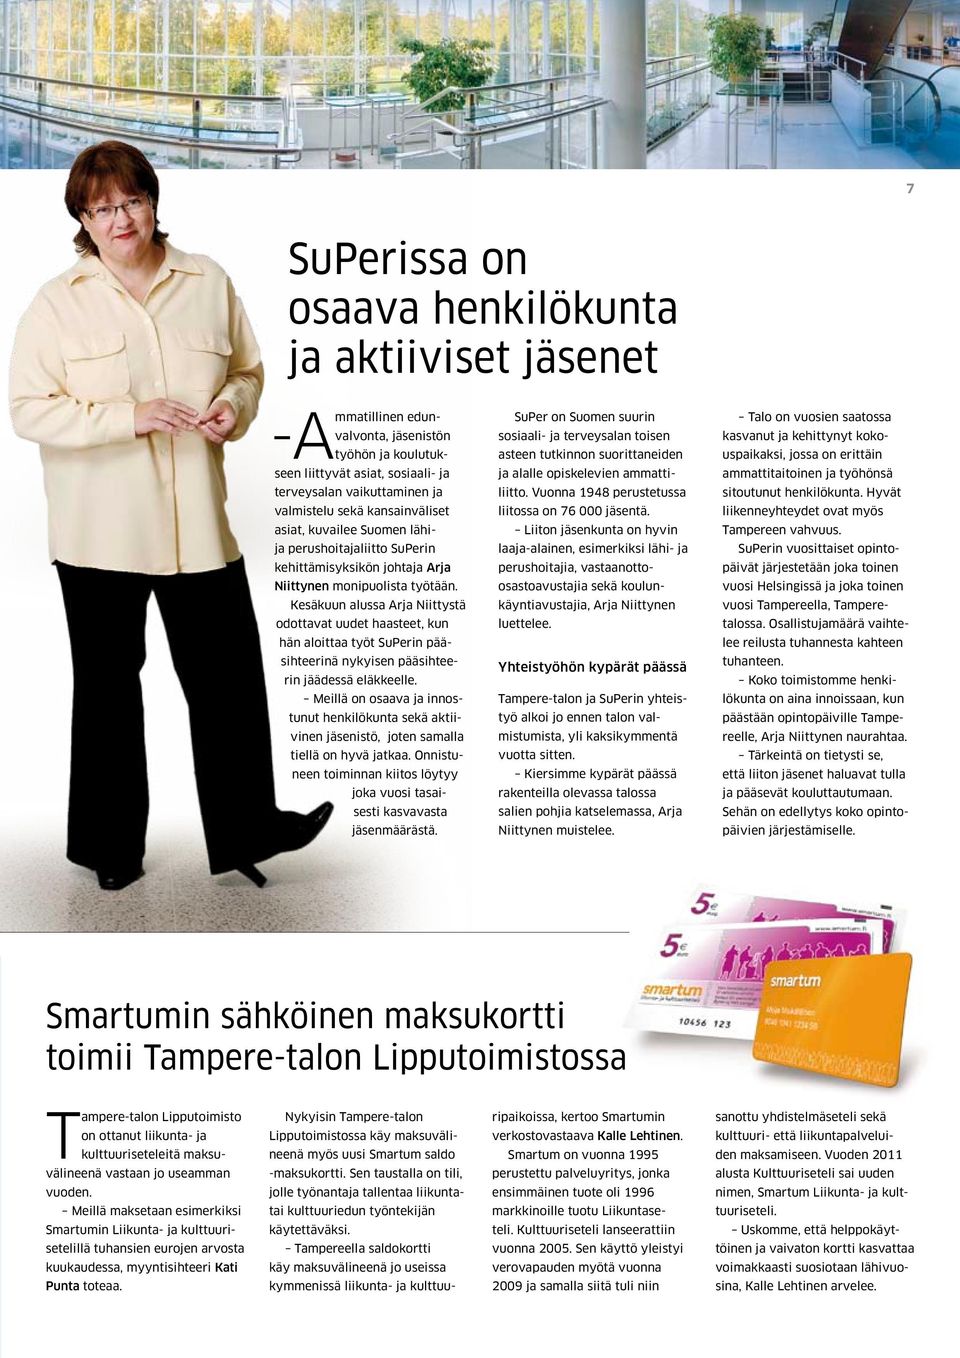 Kesäkuun alussa Arja Niittystä odottavat uudet haasteet, kun hän aloittaa työt SuPerin pääsihteerinä nykyisen pääsihteerin jäädessä eläkkeelle.